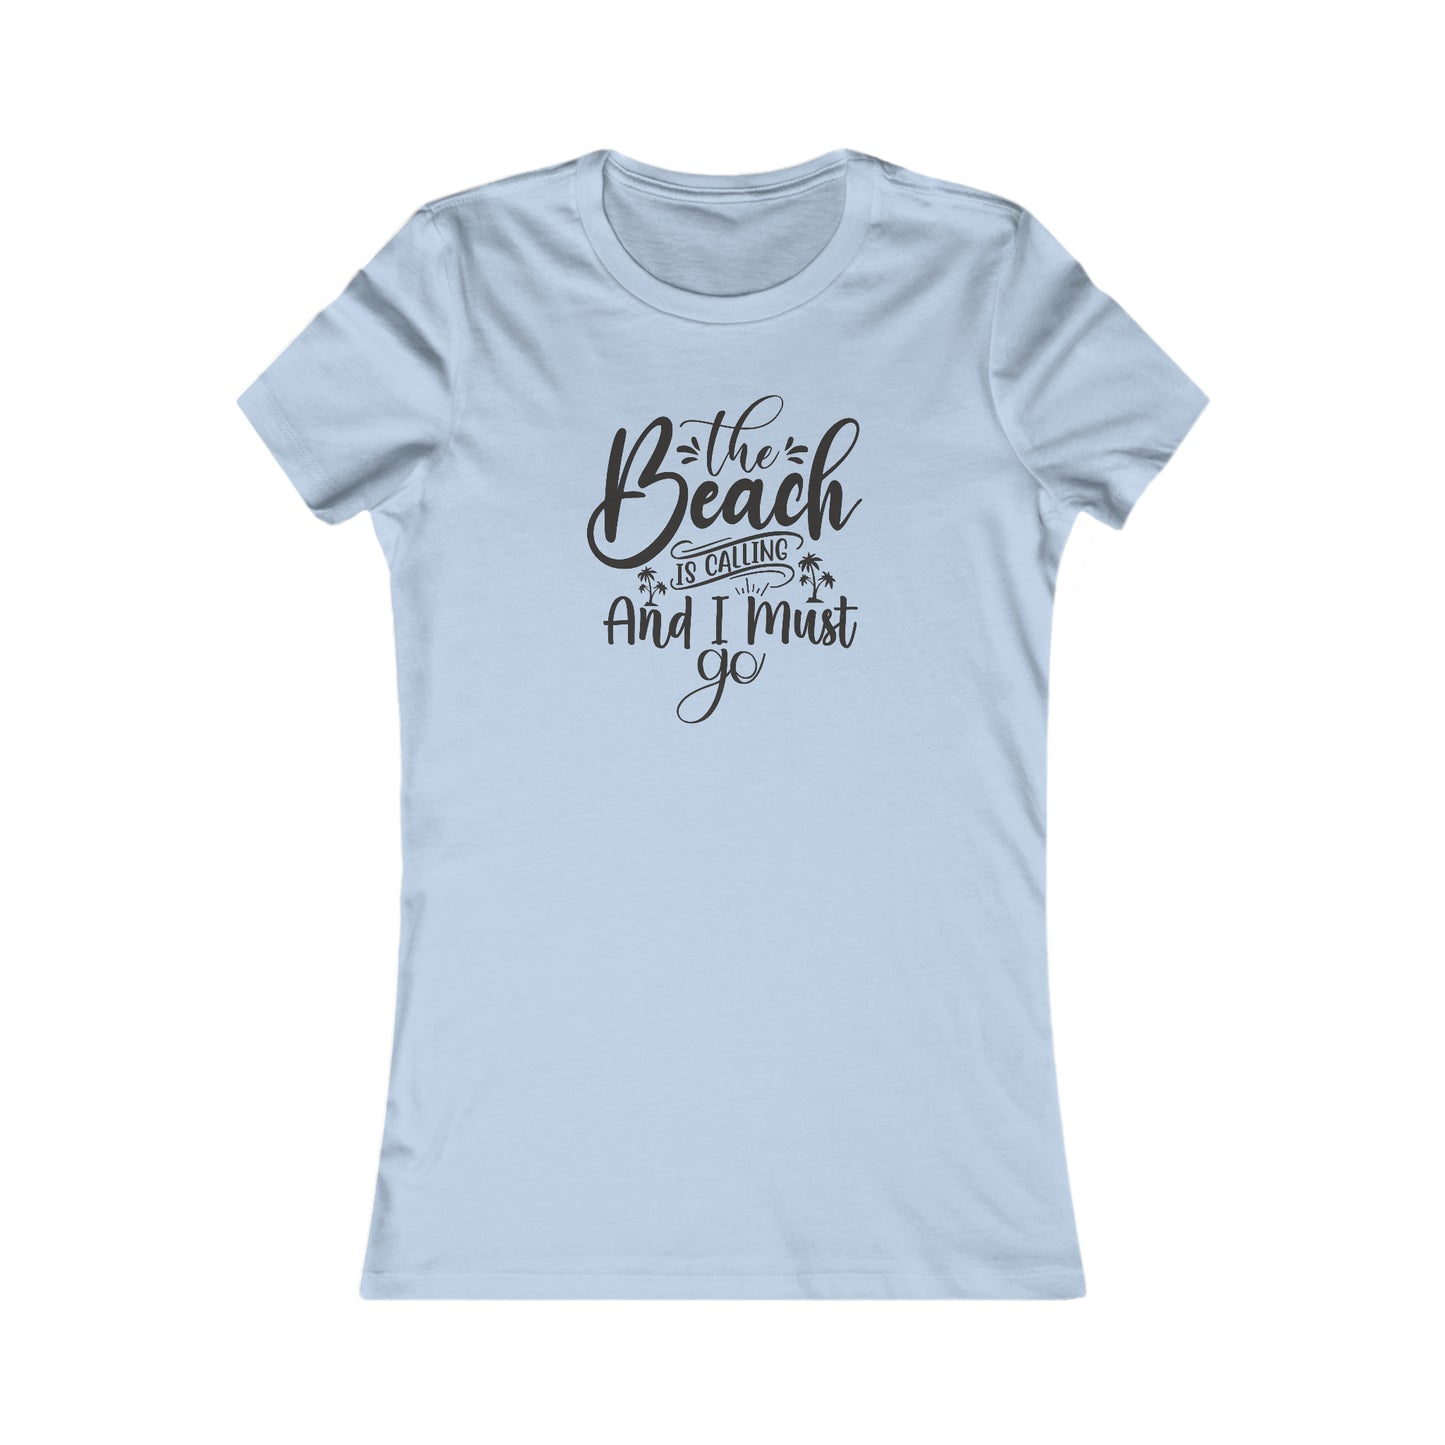 Beach T-Shirt For The Beach Is Calling TShirt For Fun Beach T Shirt For Girly Beach Tee